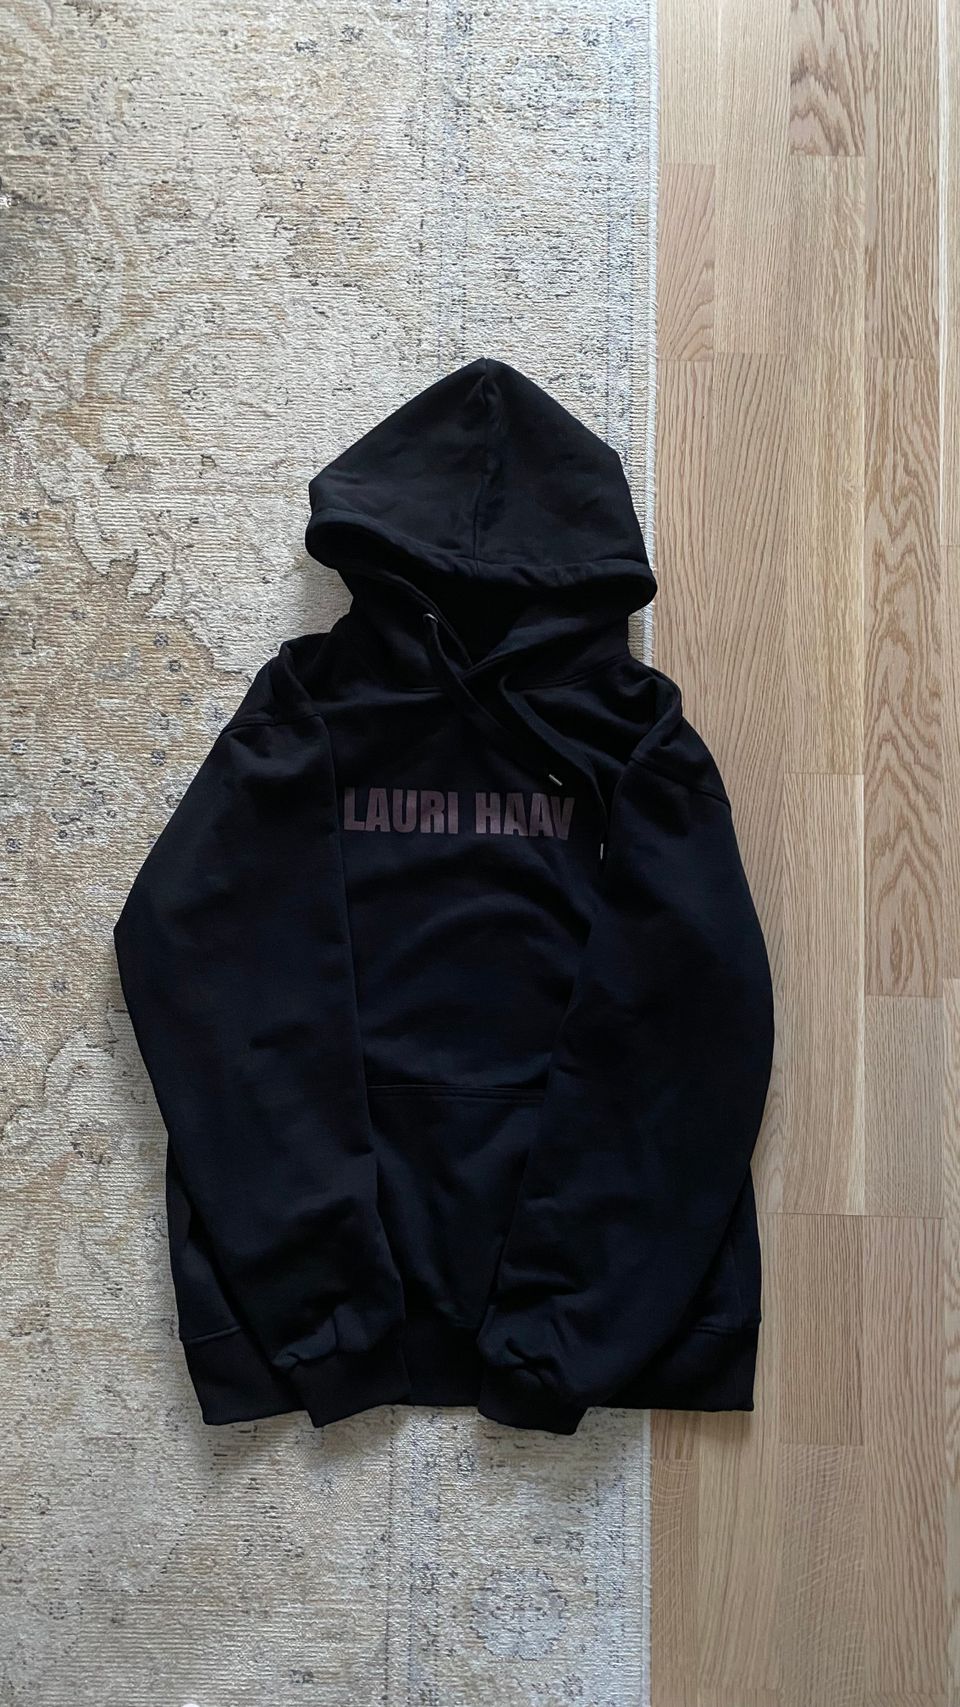 Lauri Haav Aino hoodie